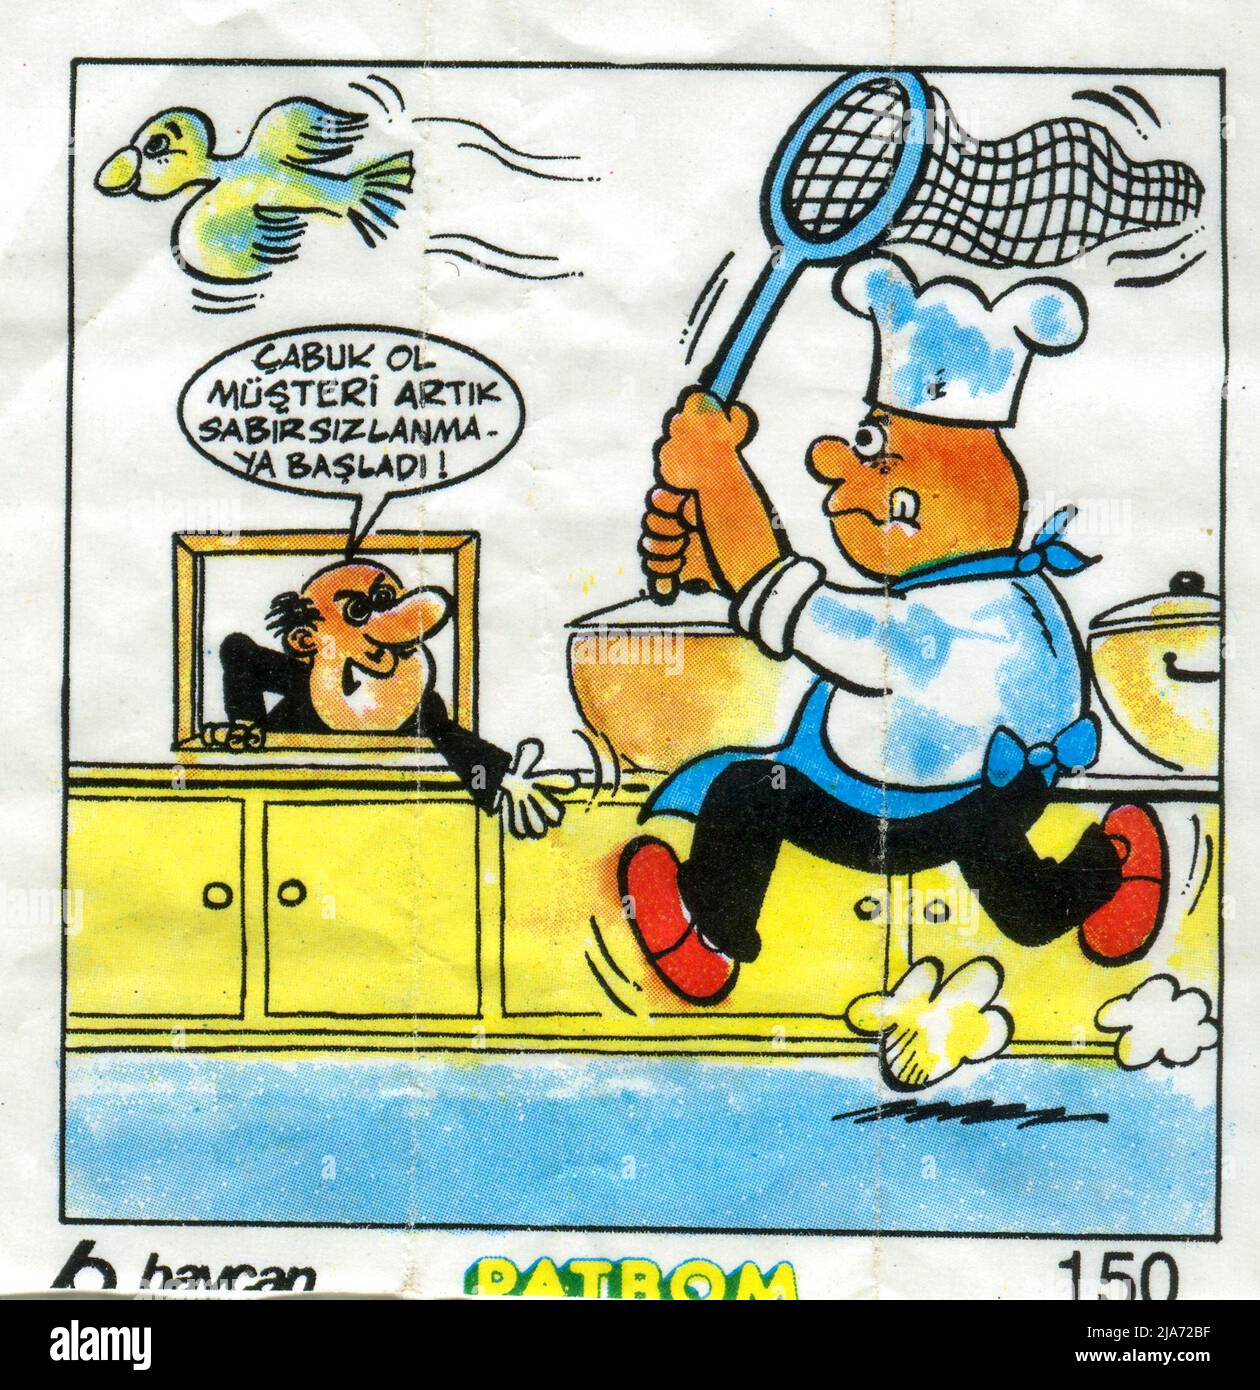 Inserto gomma da masticare turca. Baycan, PATBOM. Cartone animato. 1980s. Foto Stock